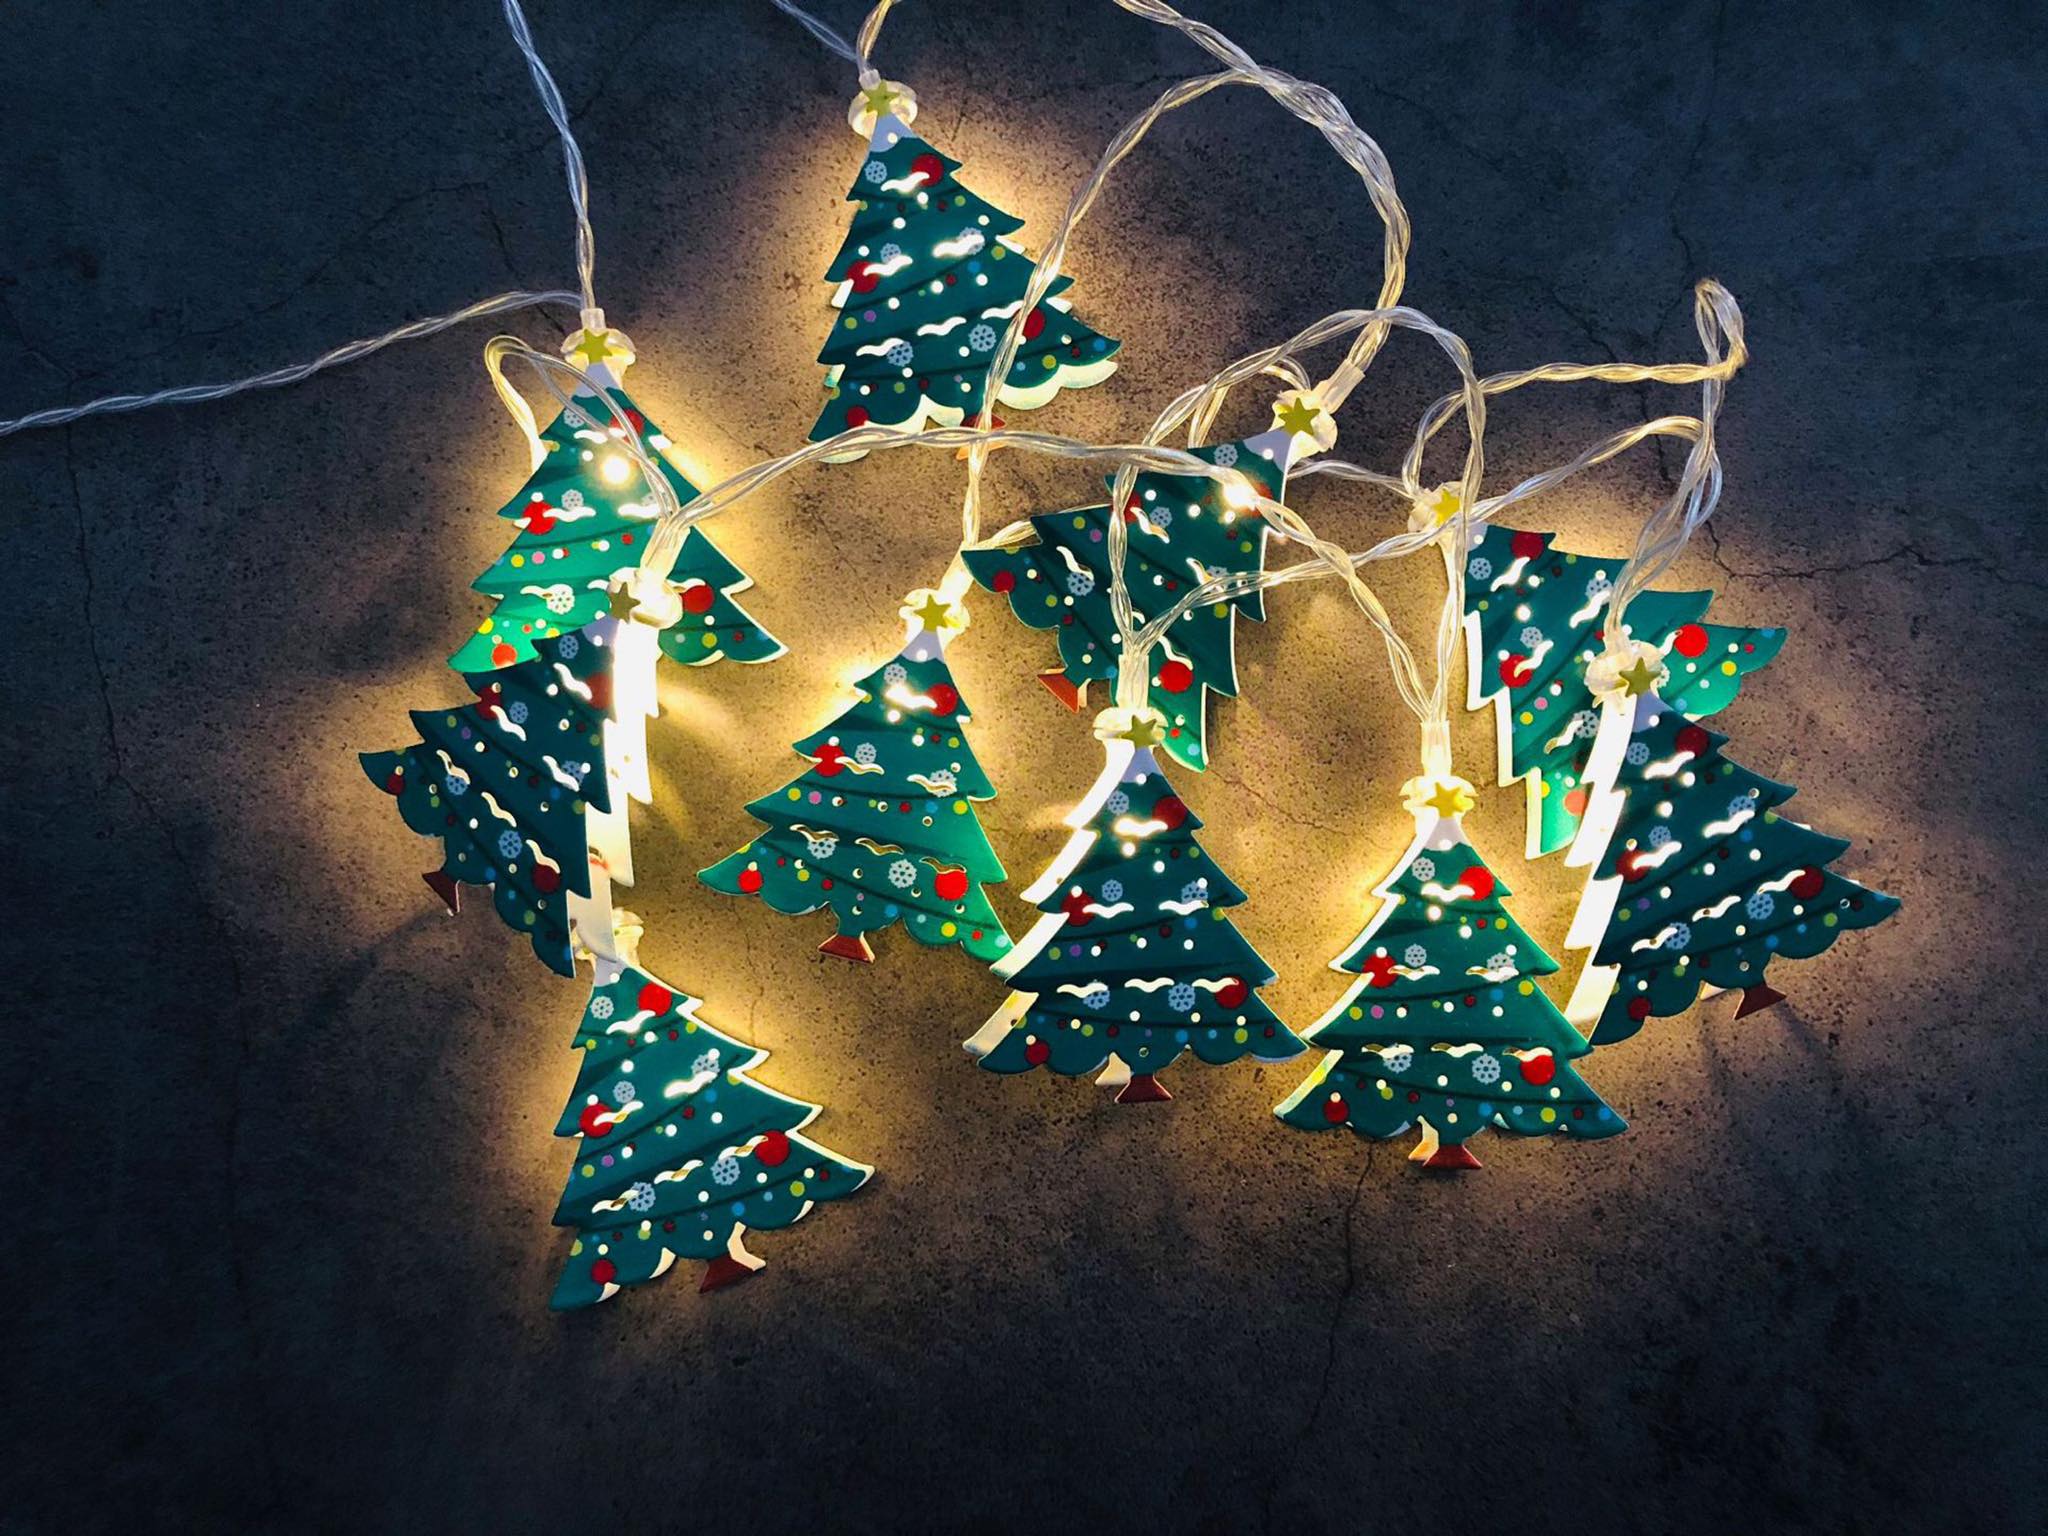 Dây Đèn Trang Trí Giáng Sinh Dễ Lắp Đặt dùng pin AA, đèn Noel Christmas light interior decorate accessory